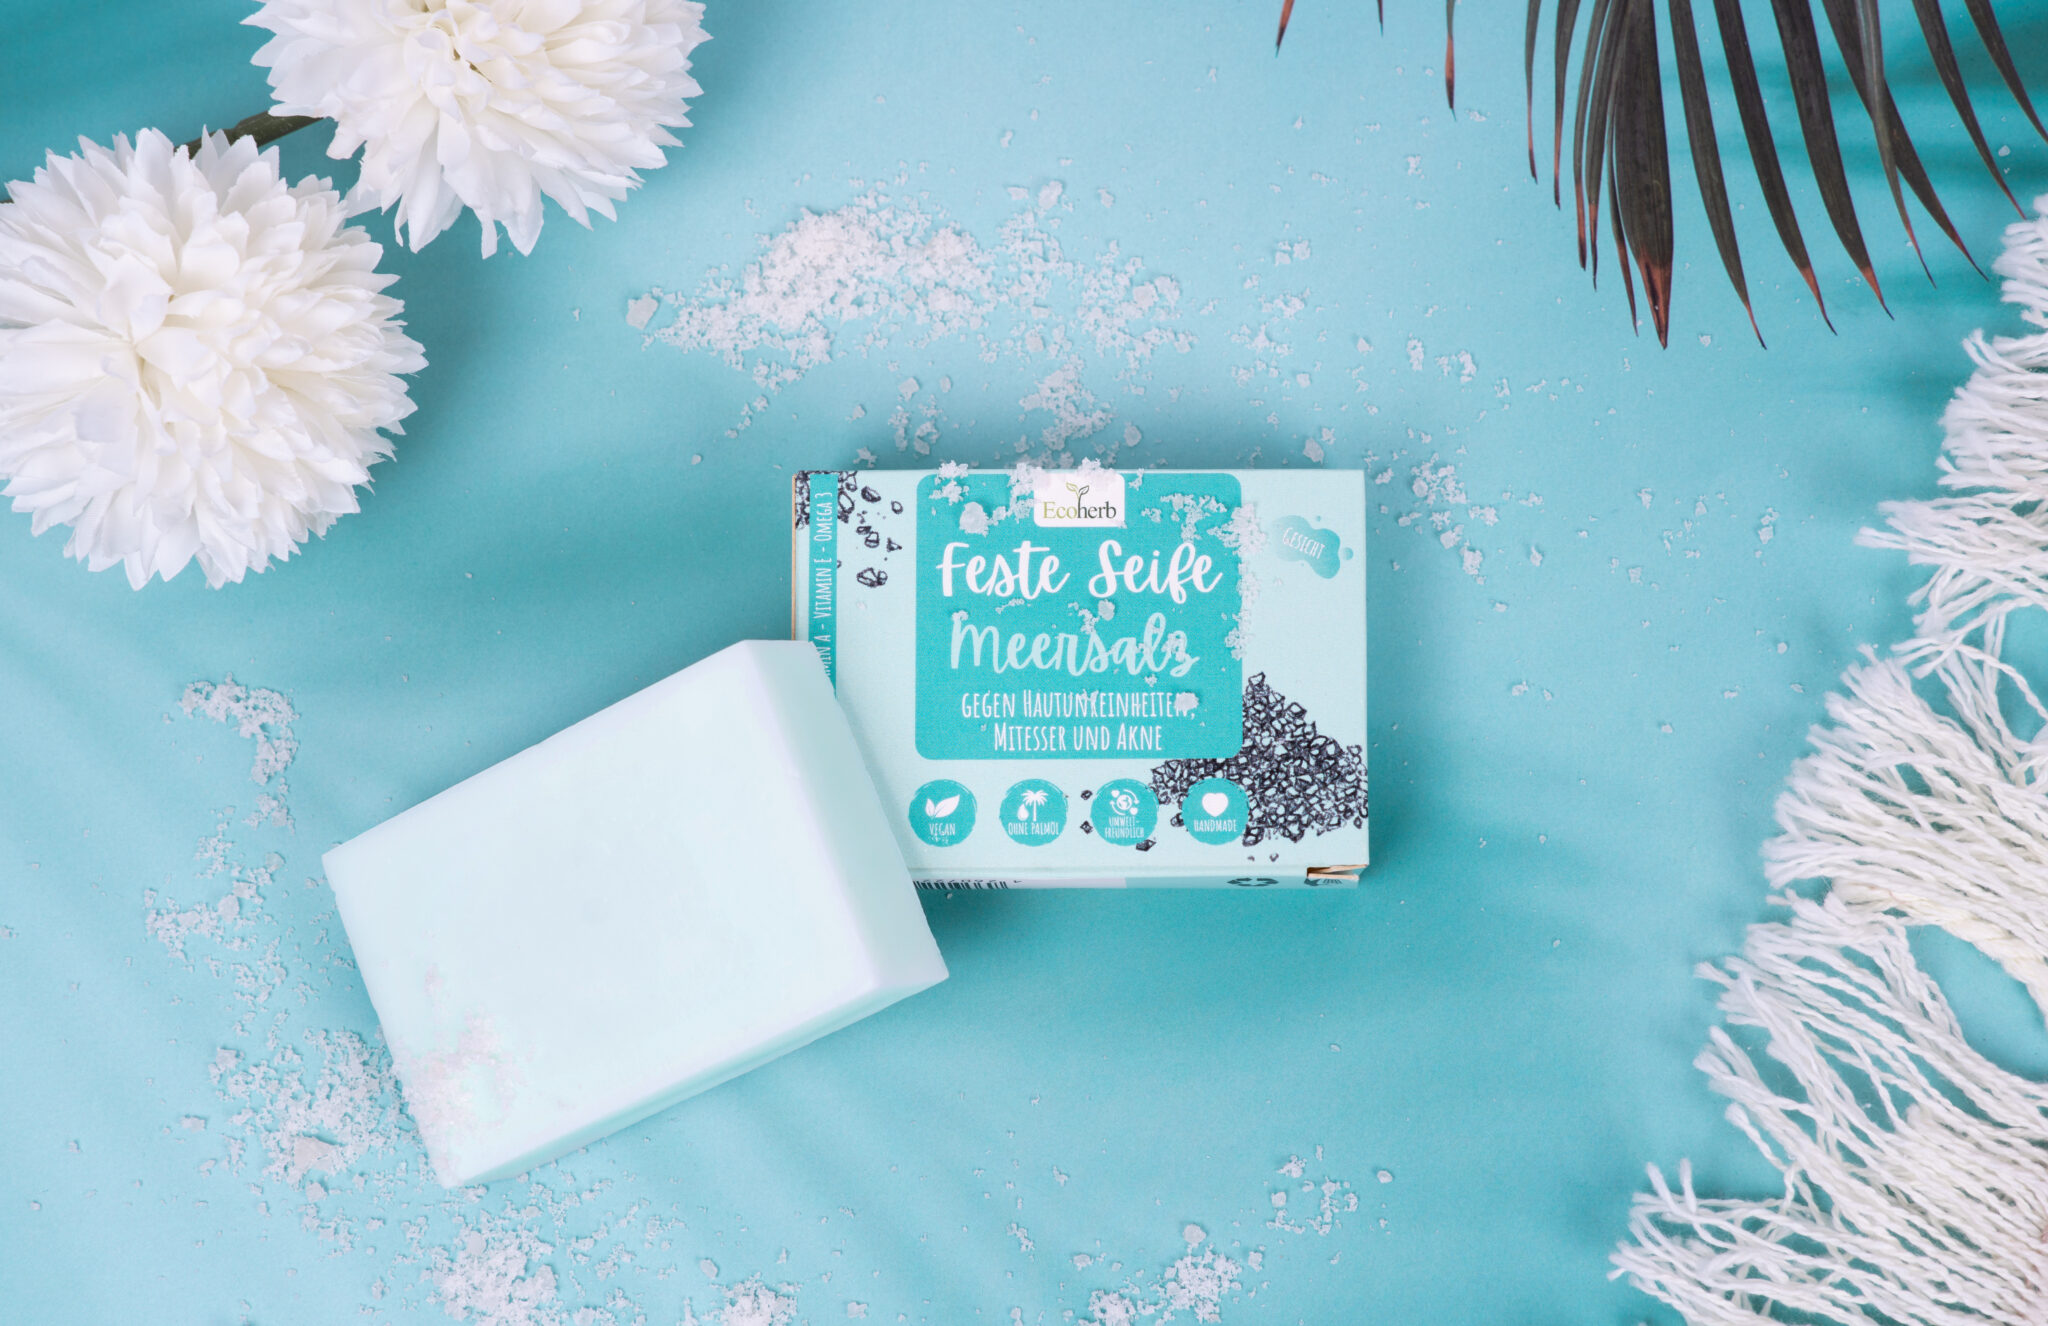 Produktfotografie, Verpackung von Fester Seife mit Meersakz von Ecoherb auf Türkise Untergrund mit Blumen und Teppich